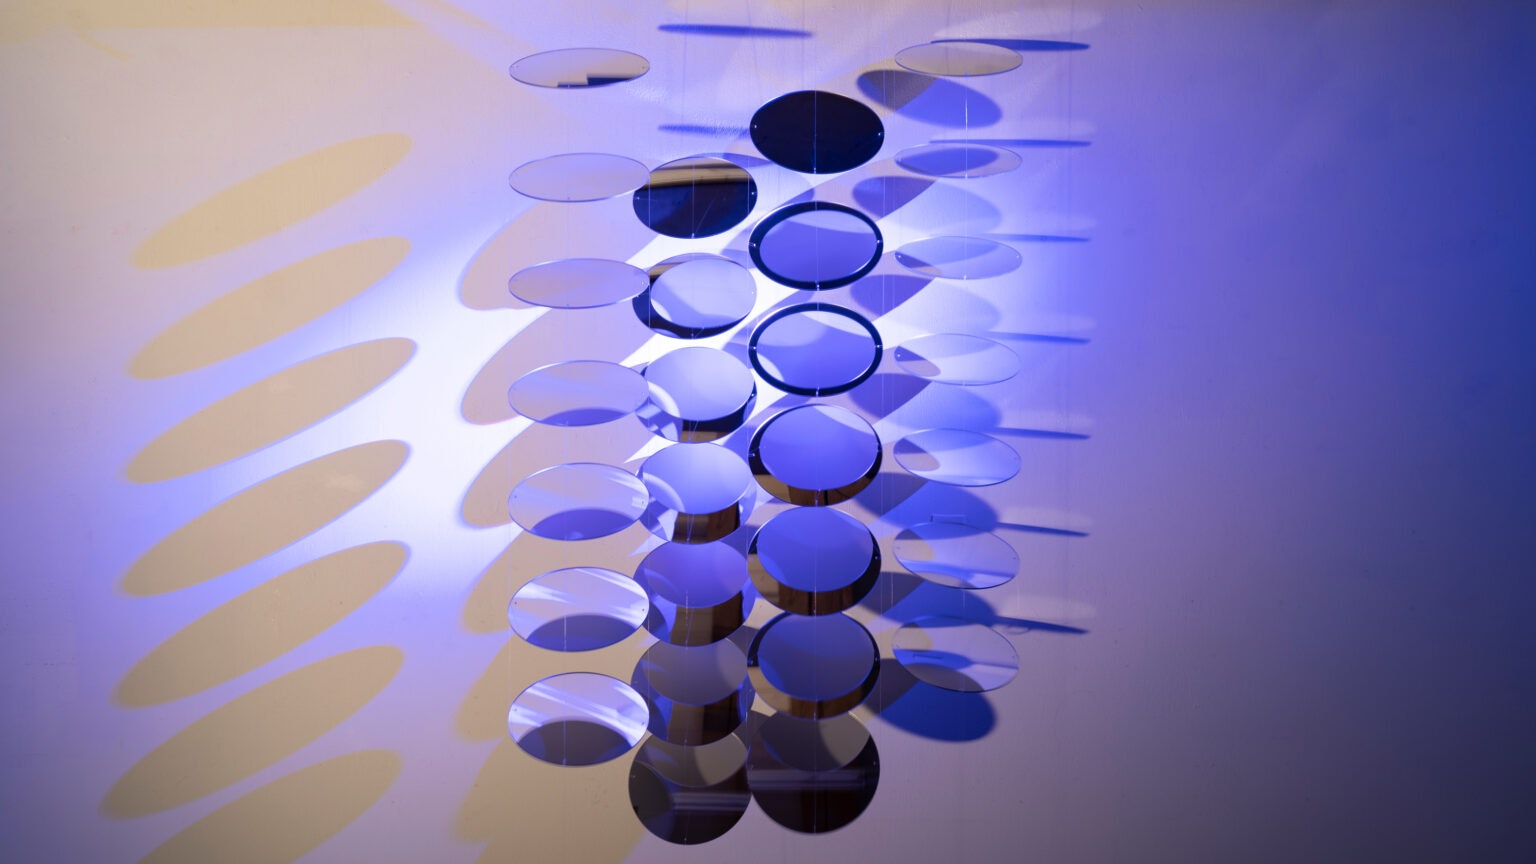 Kunstwerk met kleine schijfjes die gedeeltelijk transparant zijn in de dominante kleur blauw van Michaela Lautenschlager.